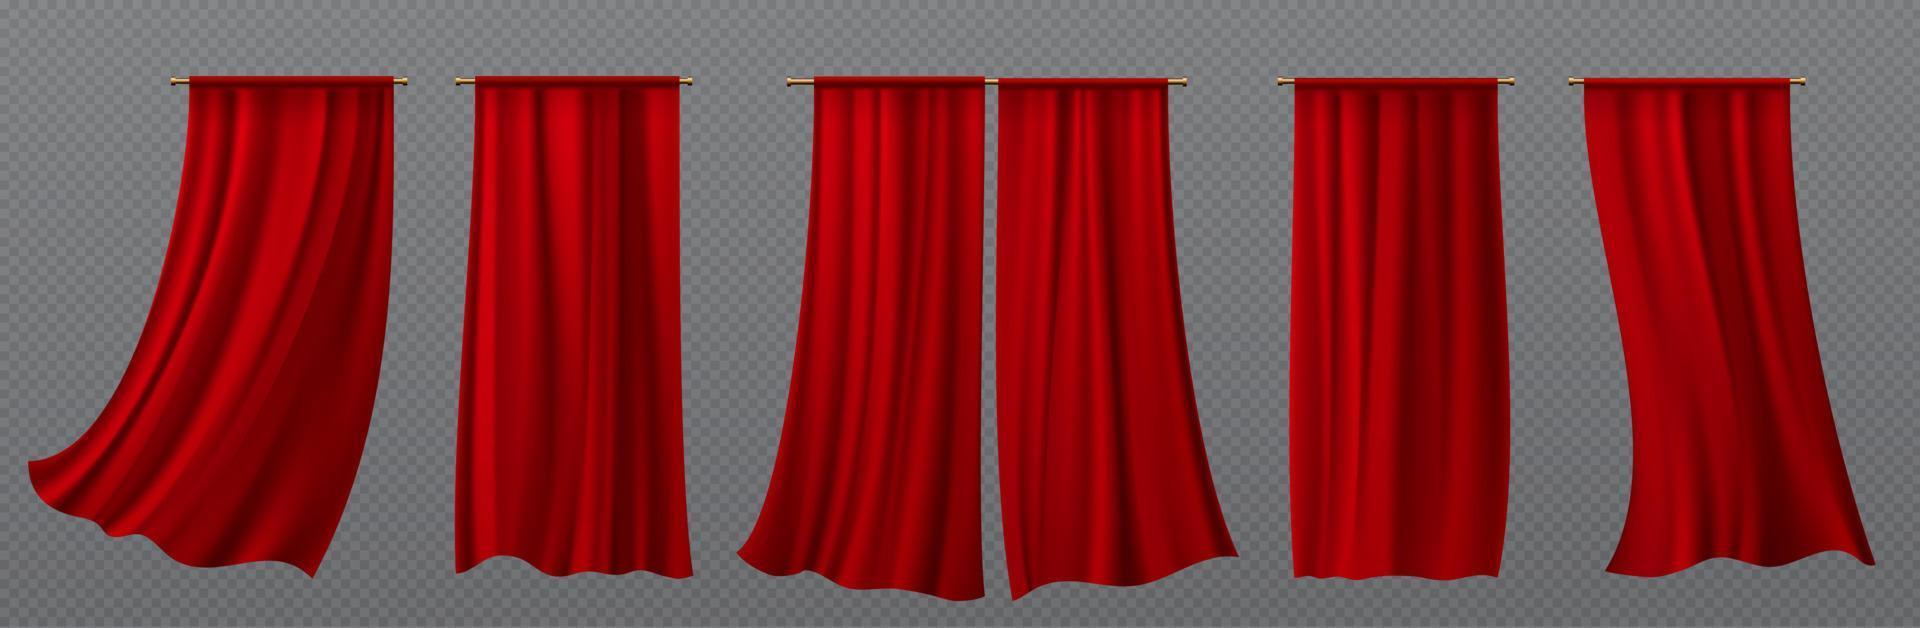 3d rood draperie lap, realistisch zijde gordijn vector